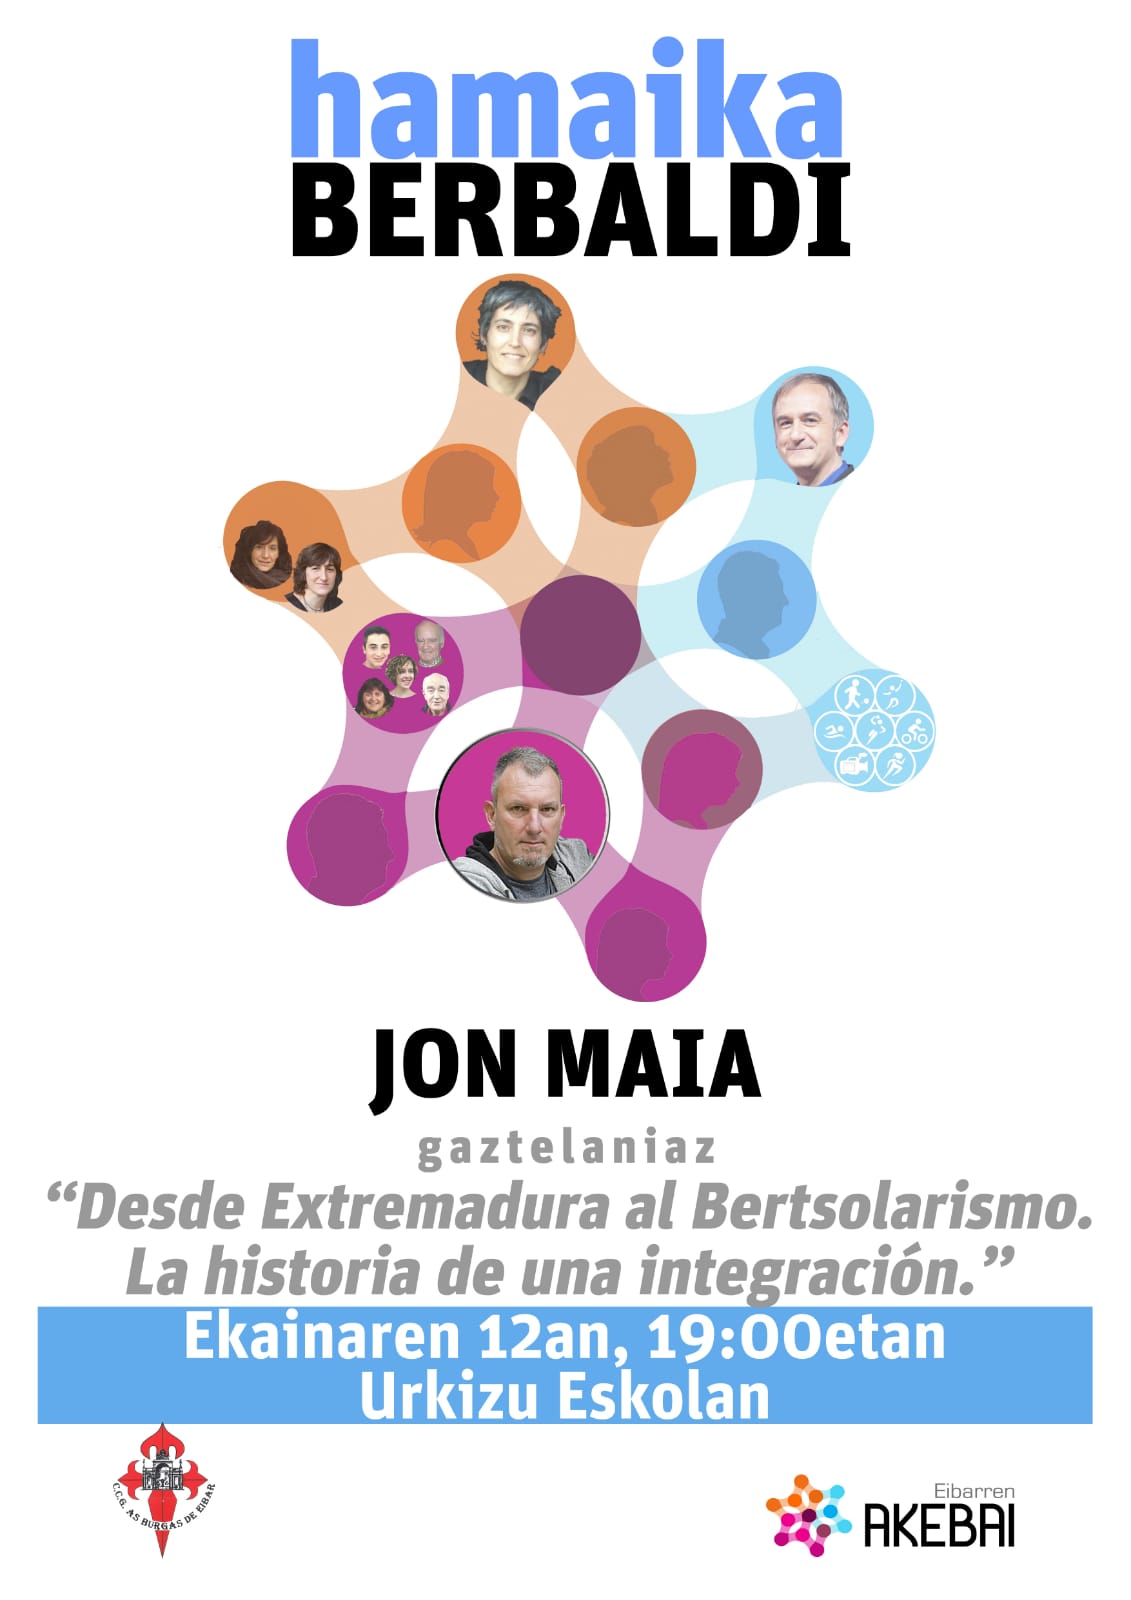 La escuela de Urkizu acogerá esta tarde la charla "Desde Extremadura al Bertsolarismo. La historia de una integración" del bertsolari Jon Maia